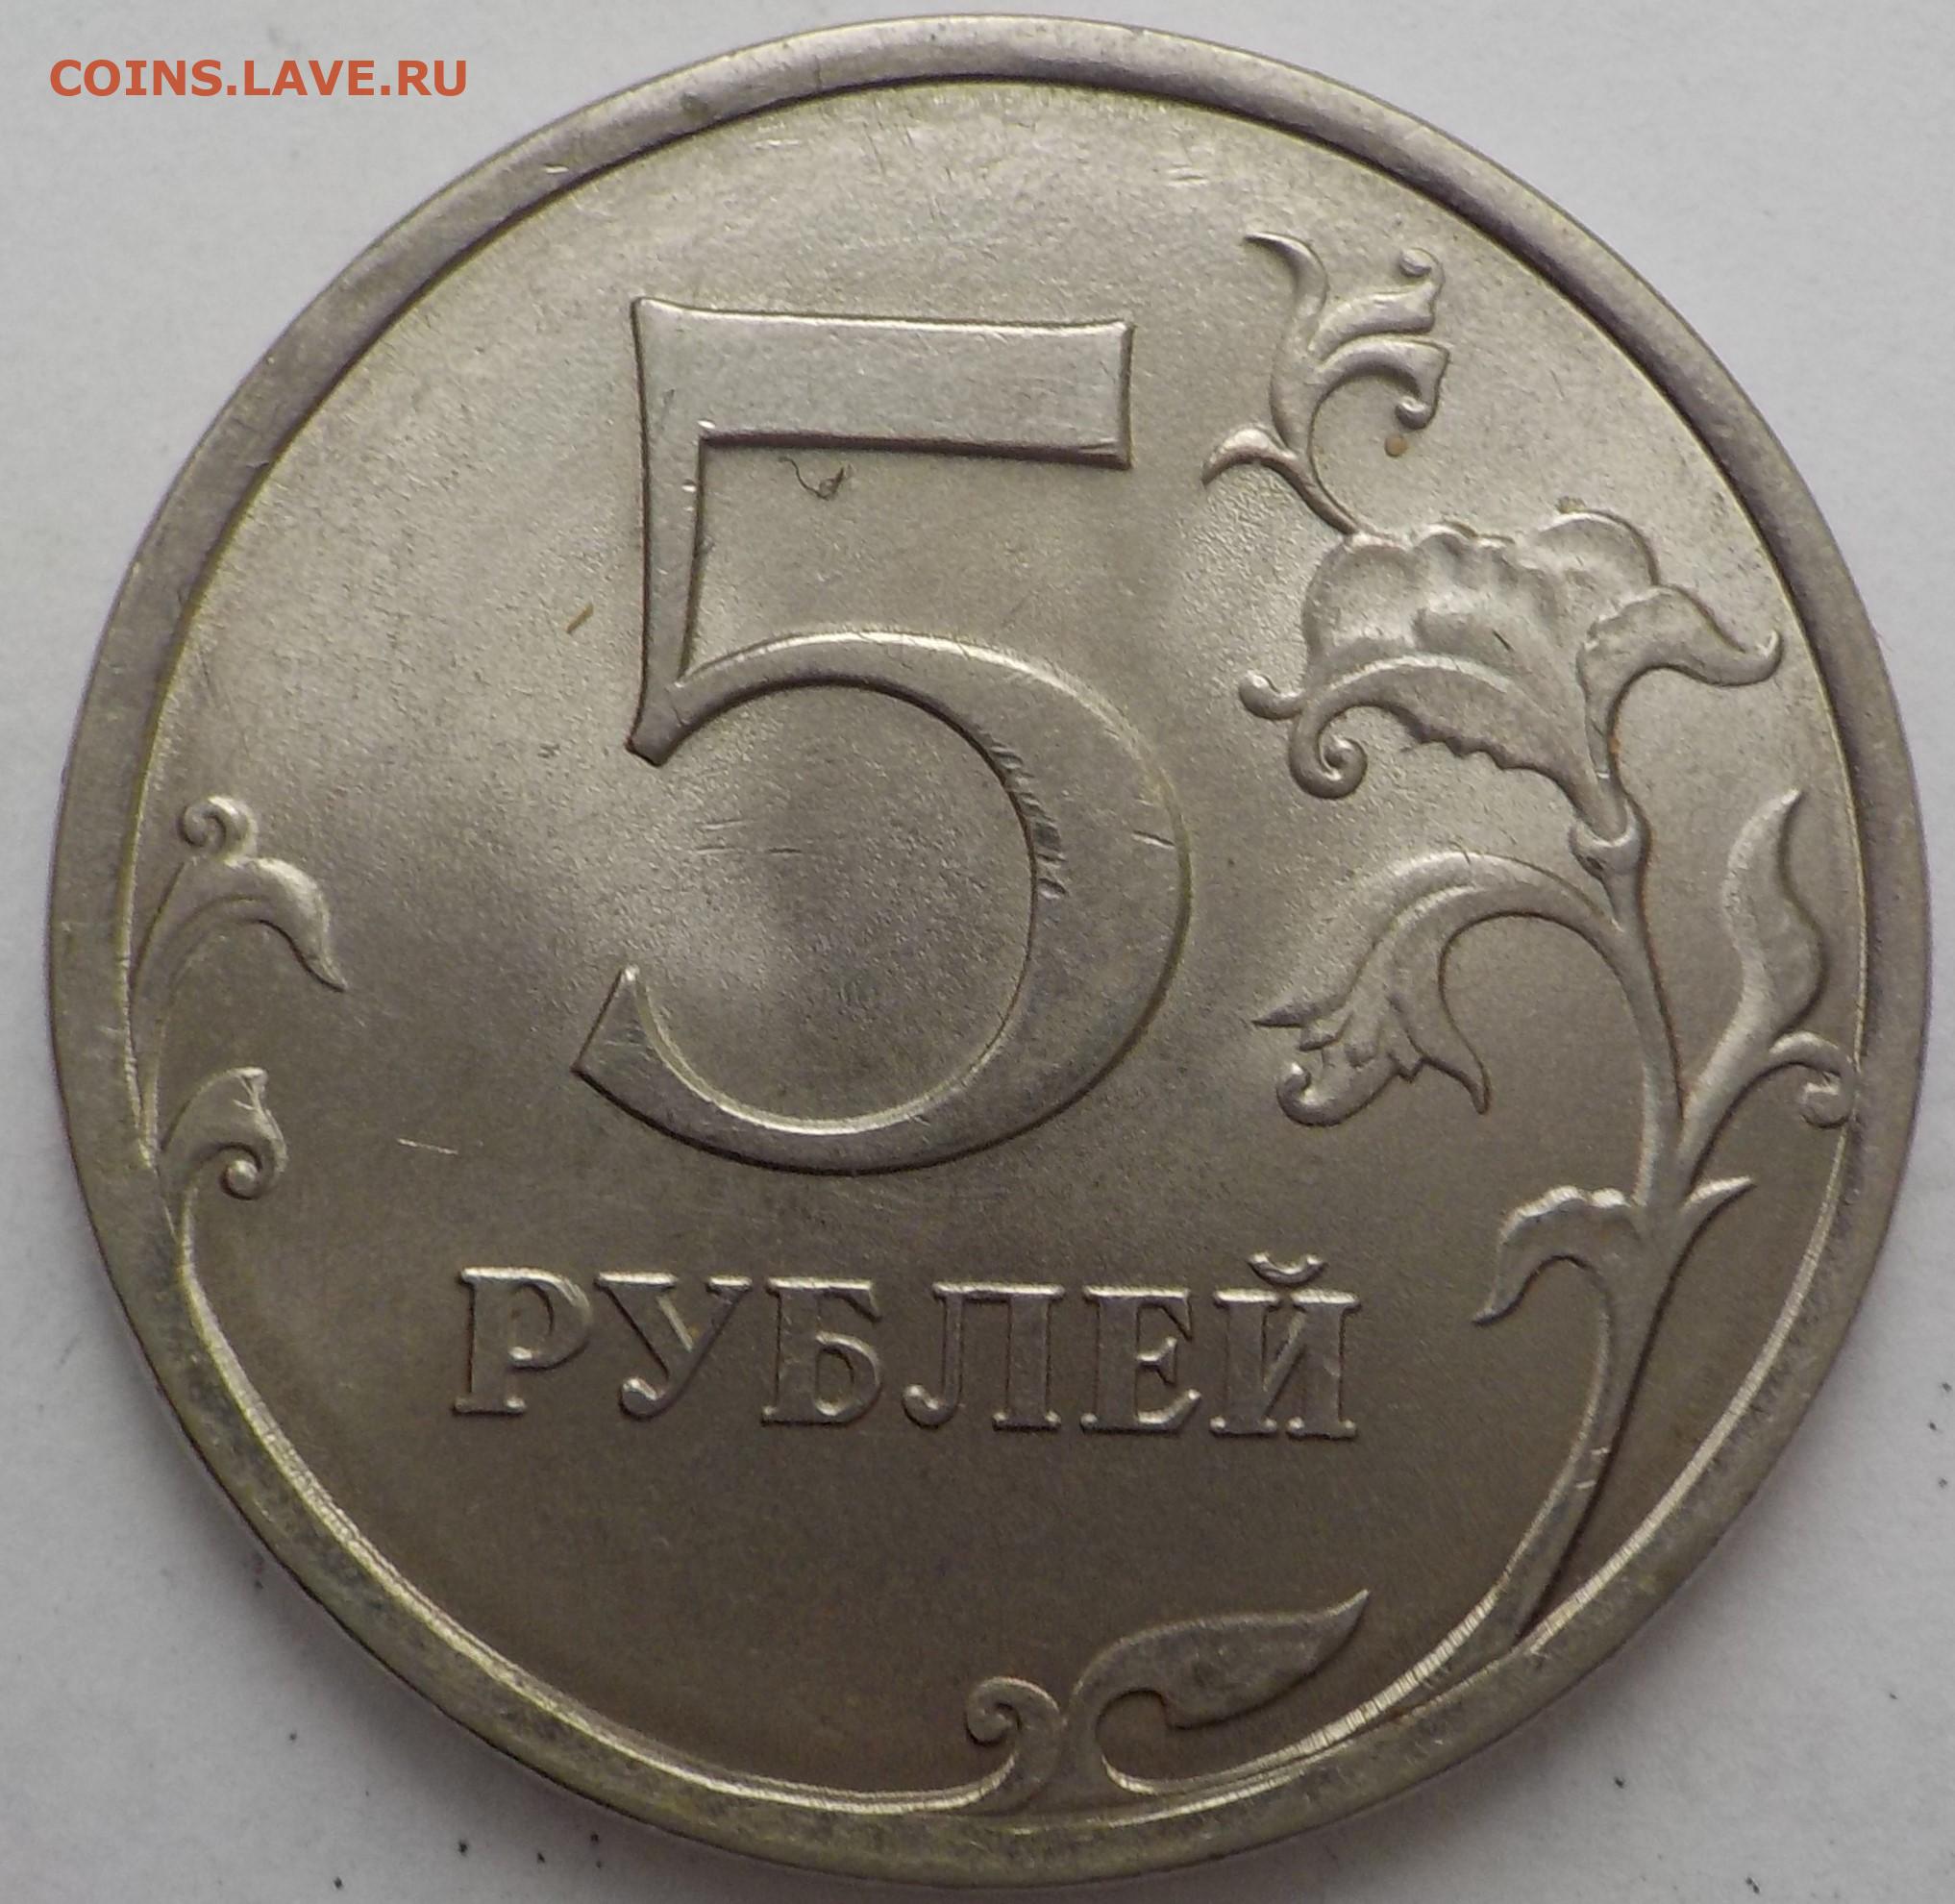 5 рублей вернули. Пять рублей. Размер 5 рублевой монеты. Размер 5 рублей. 5 Рублей картинка.